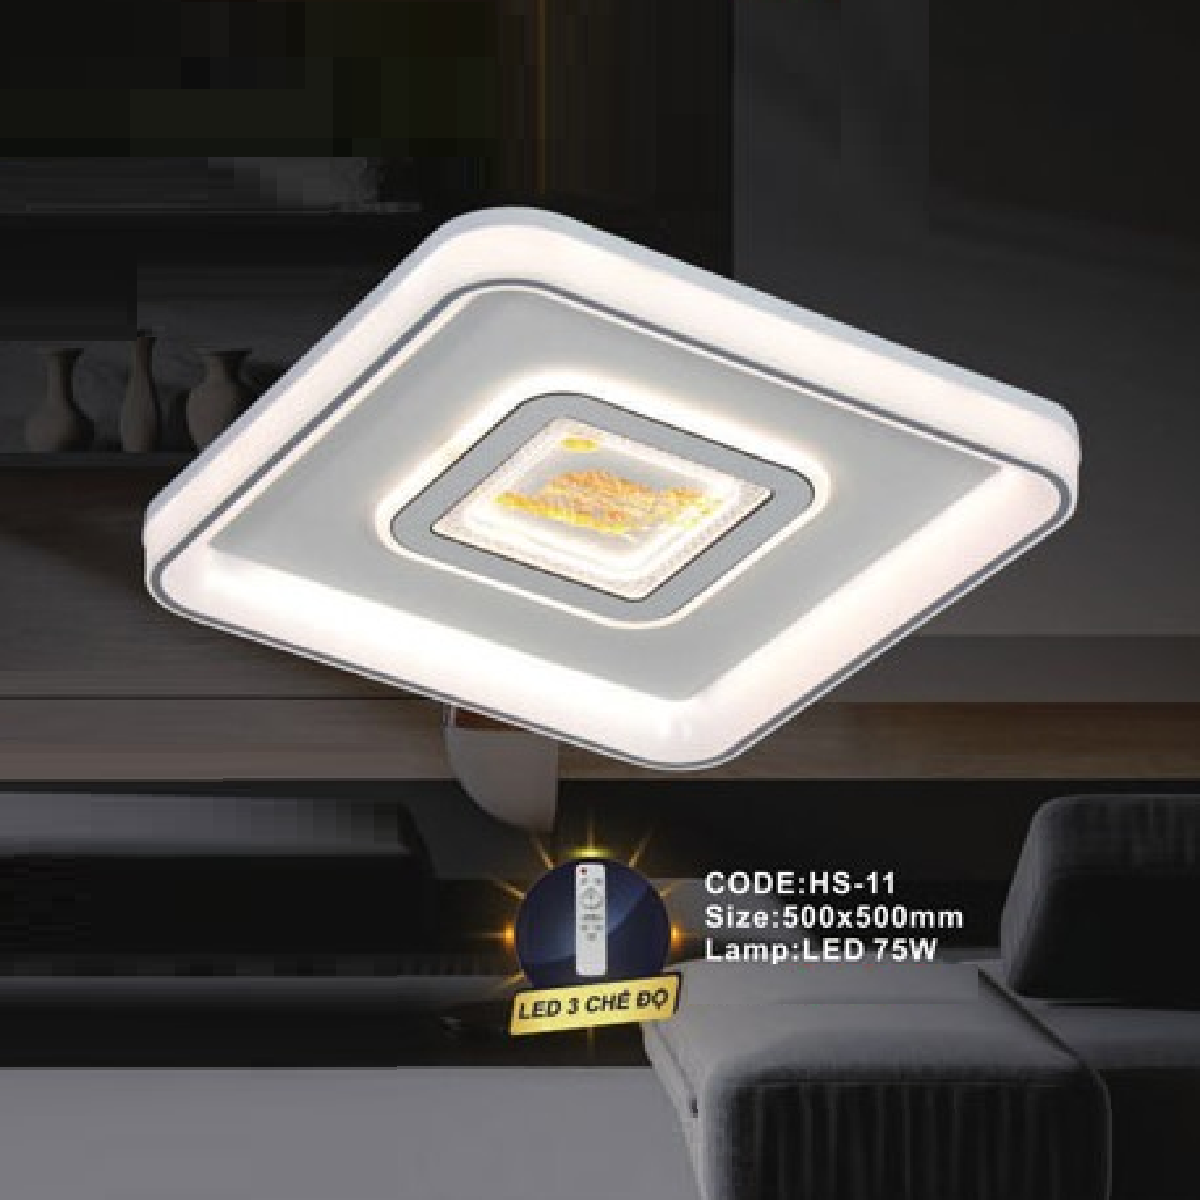 CODE: HS-11: Đèn áp trần LED - KT: L500mm x W500mm - Đèn LED 75W ánh sáng đổi 3 màu